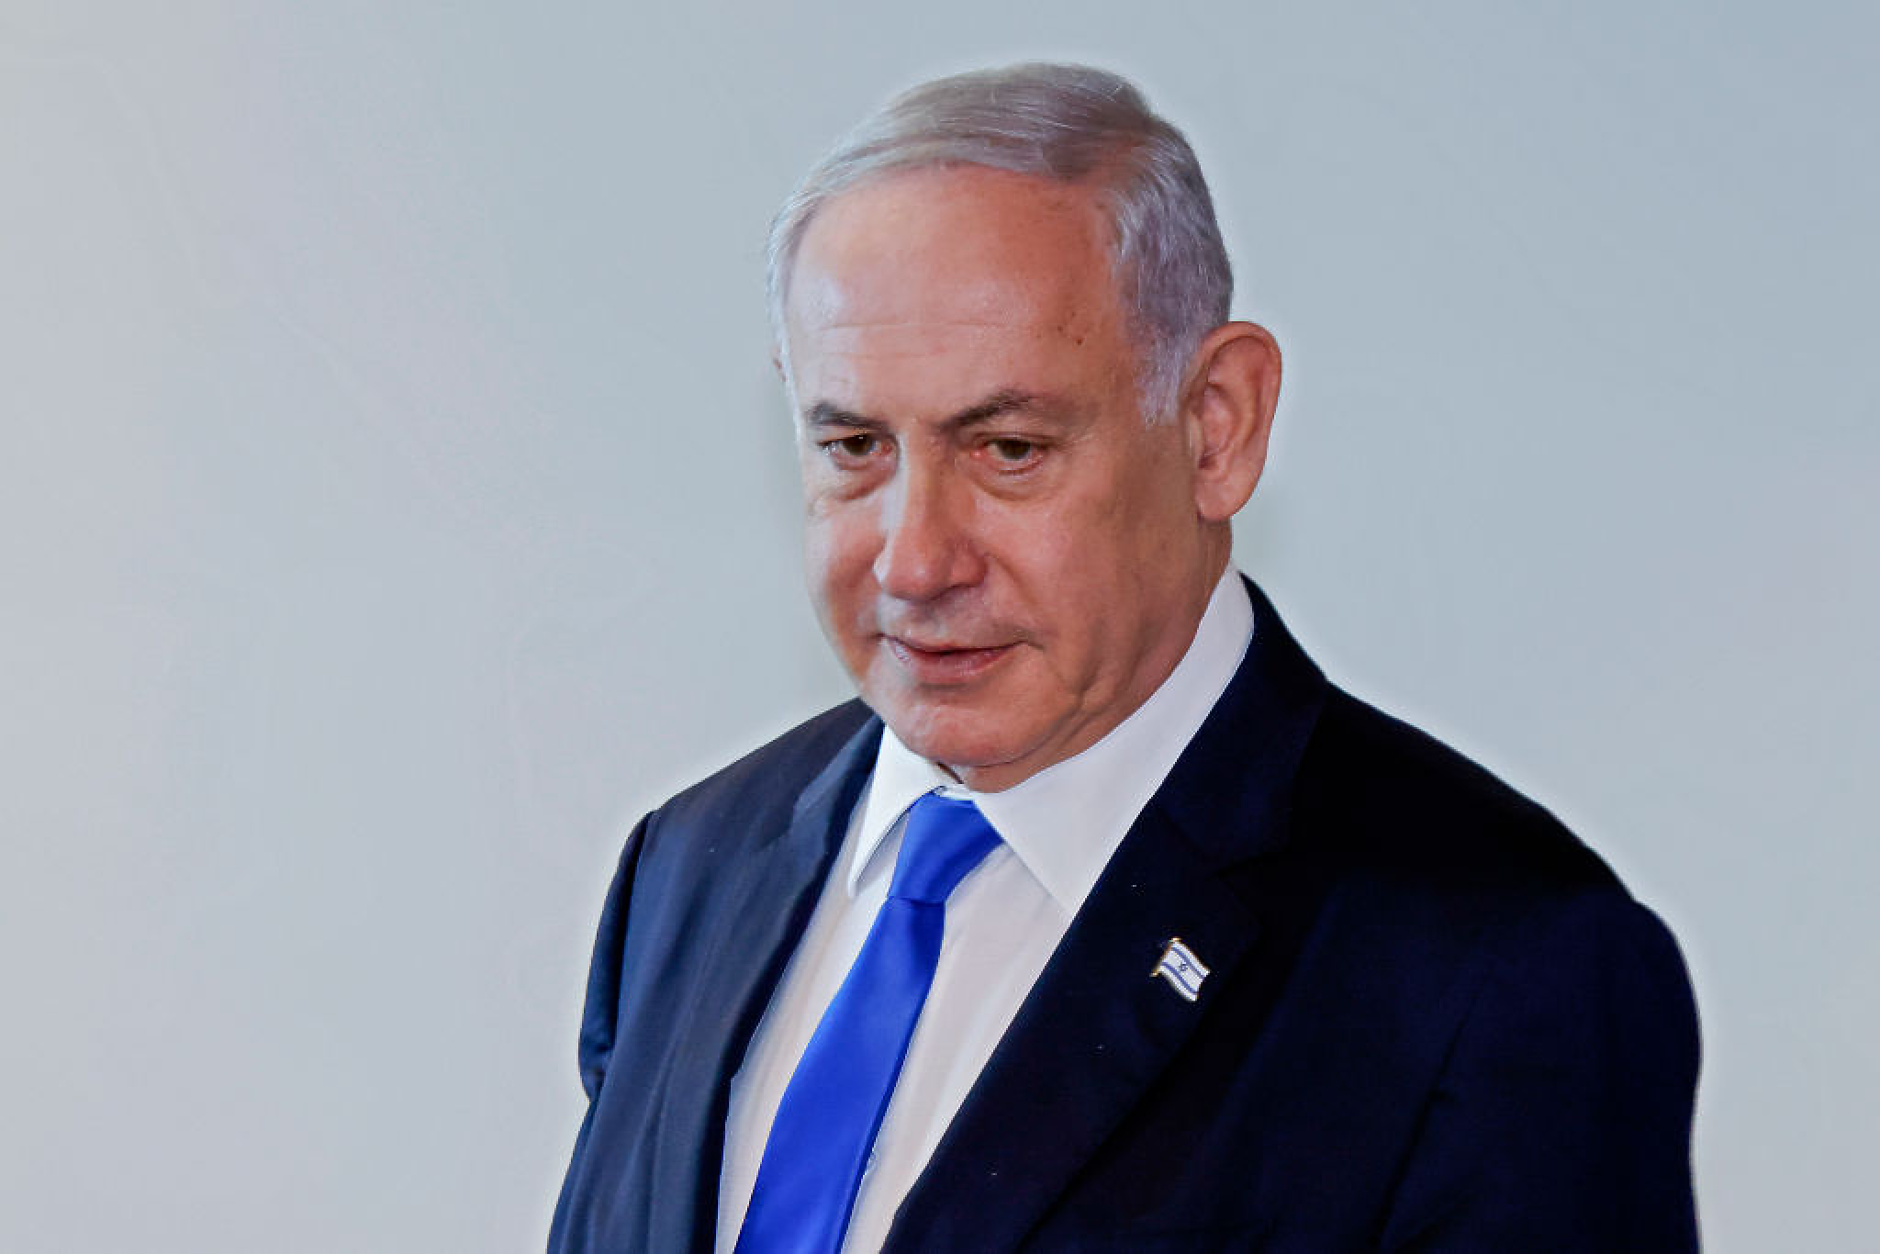 Нетаняху: Отговорът на иранската атака трябва да се осъществи умно